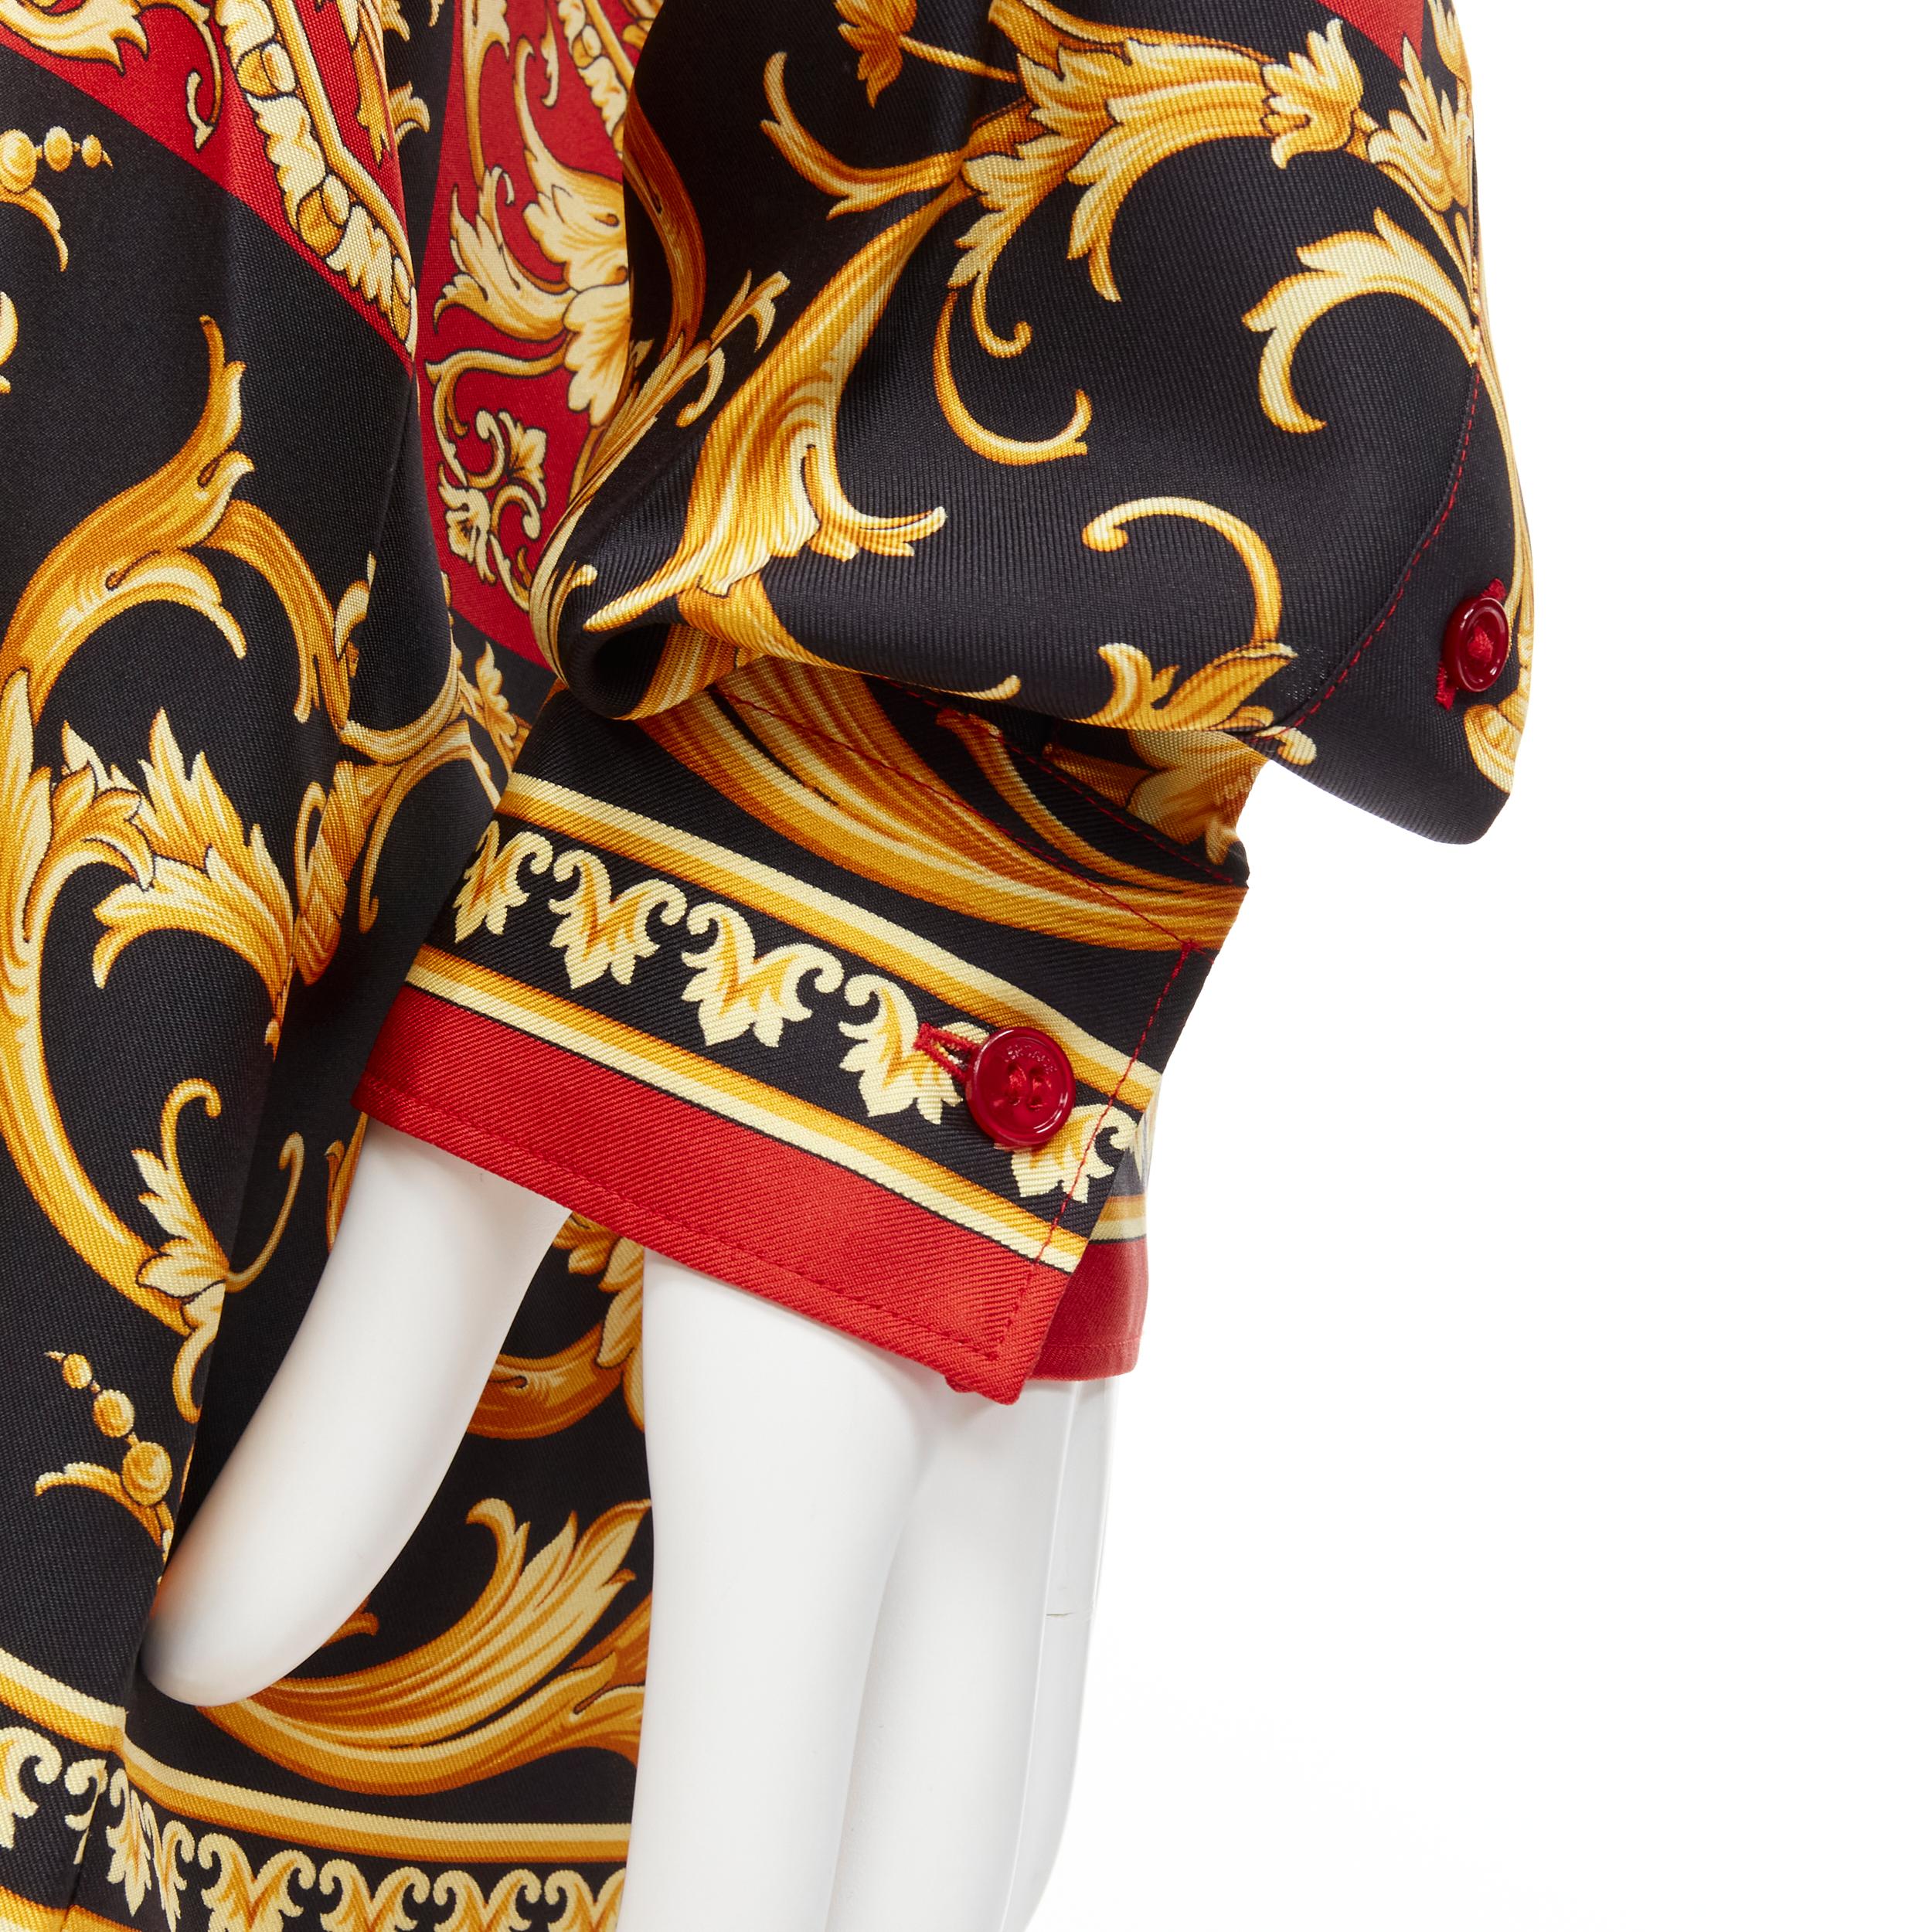 Men's new VERSACE Le Pop Classique Royal Baroque 100% silk black red shirt EU41 XL